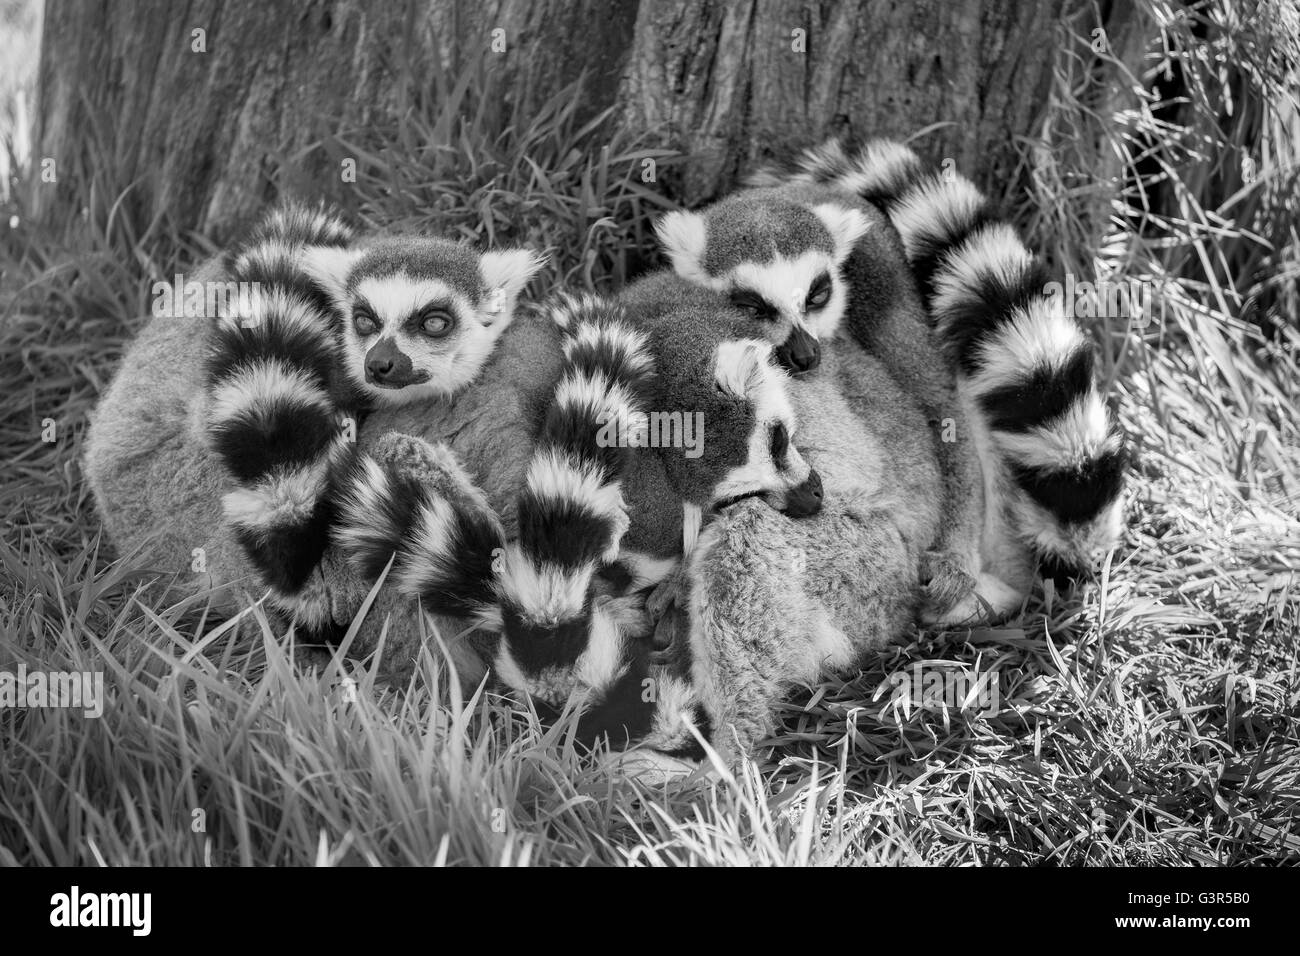 Imagen en blanco y negro de un grupo de lemures de cola de anillo para dormir. Foto de stock